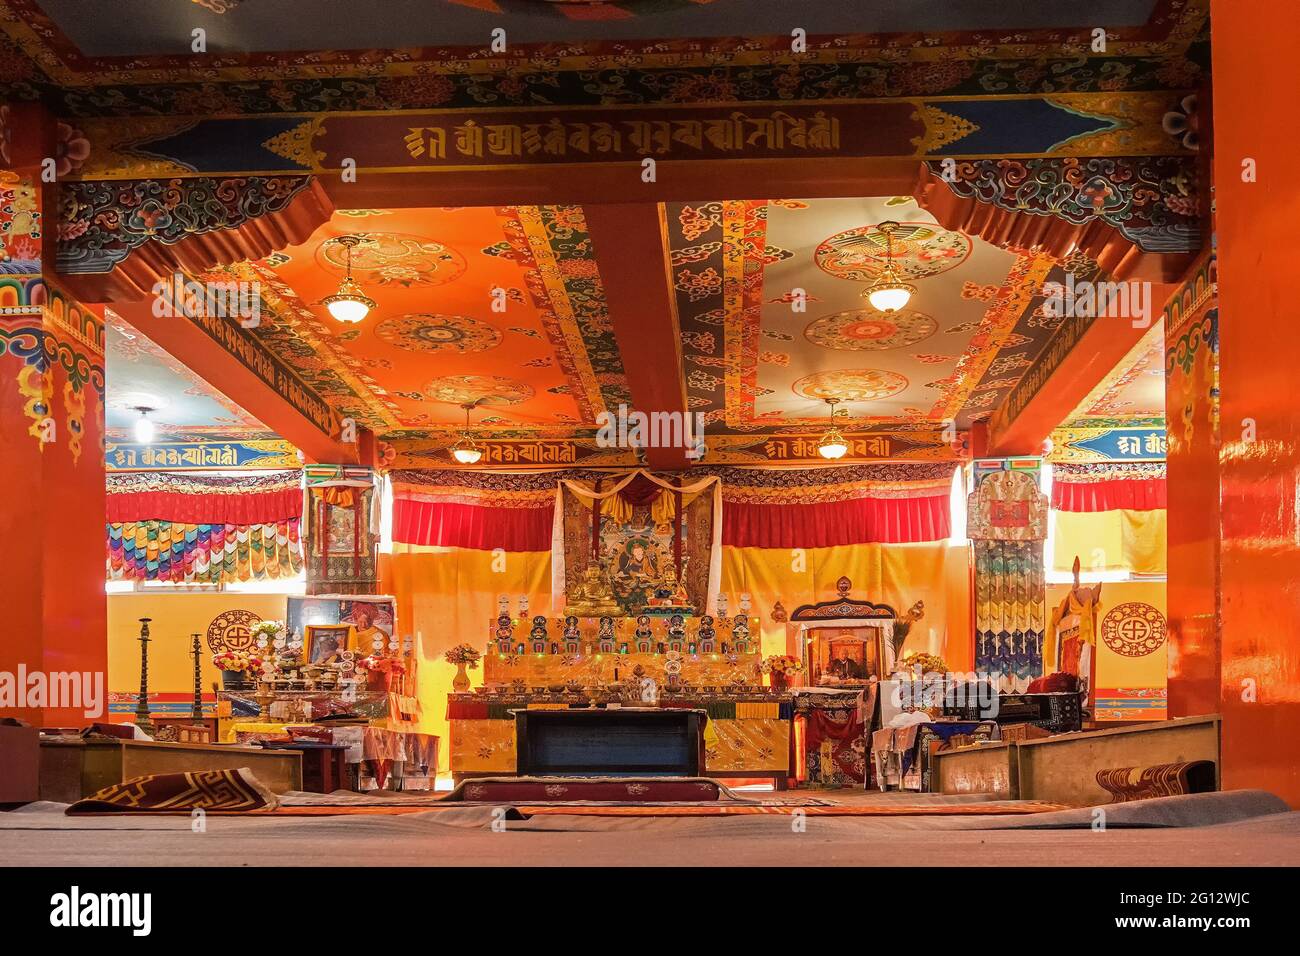 Monastère SAMDRUPTSE, RAVANGA, SIKKIM, INDE - 20 OCTOBRE 2016 : vue intérieure du monastère bouddhiste Samdruptse, Sikkim, Inde. Permission prise. Banque D'Images